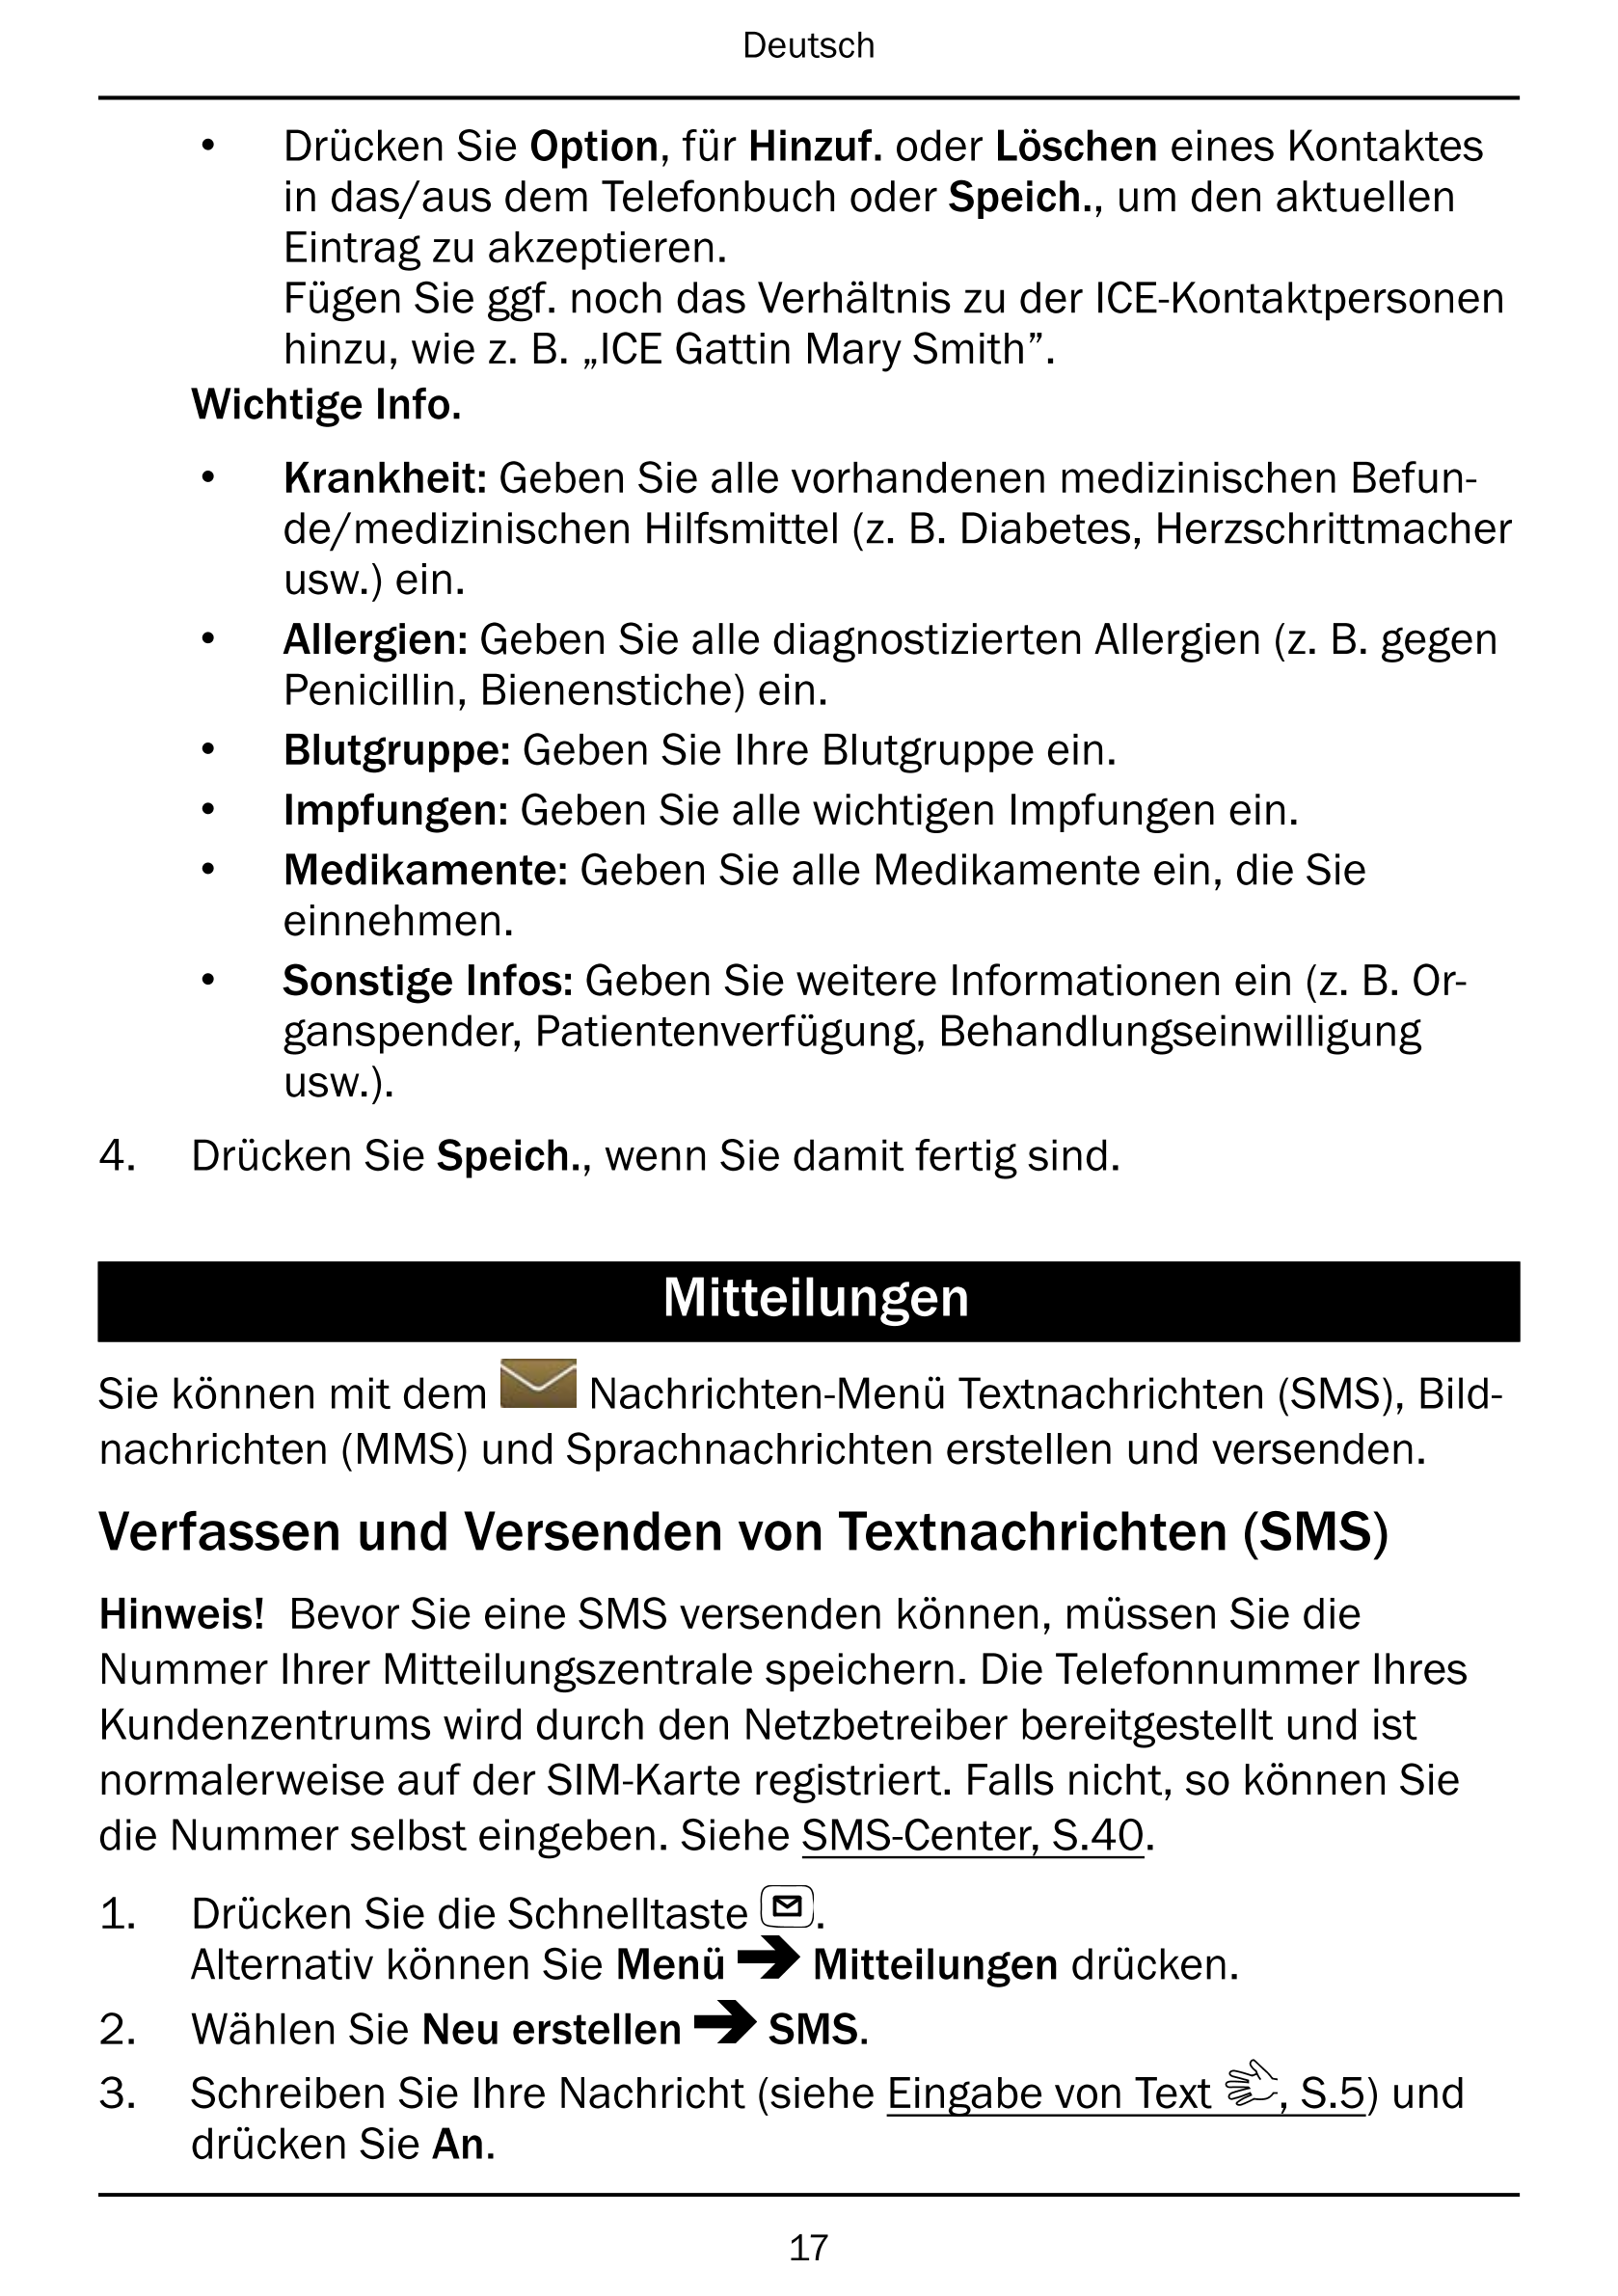 Deutsch
• Drücken Sie Option, für Hinzuf. oder Löschen eines Kontaktes
in das/aus dem Telefonbuch oder Speich., um den aktuellen